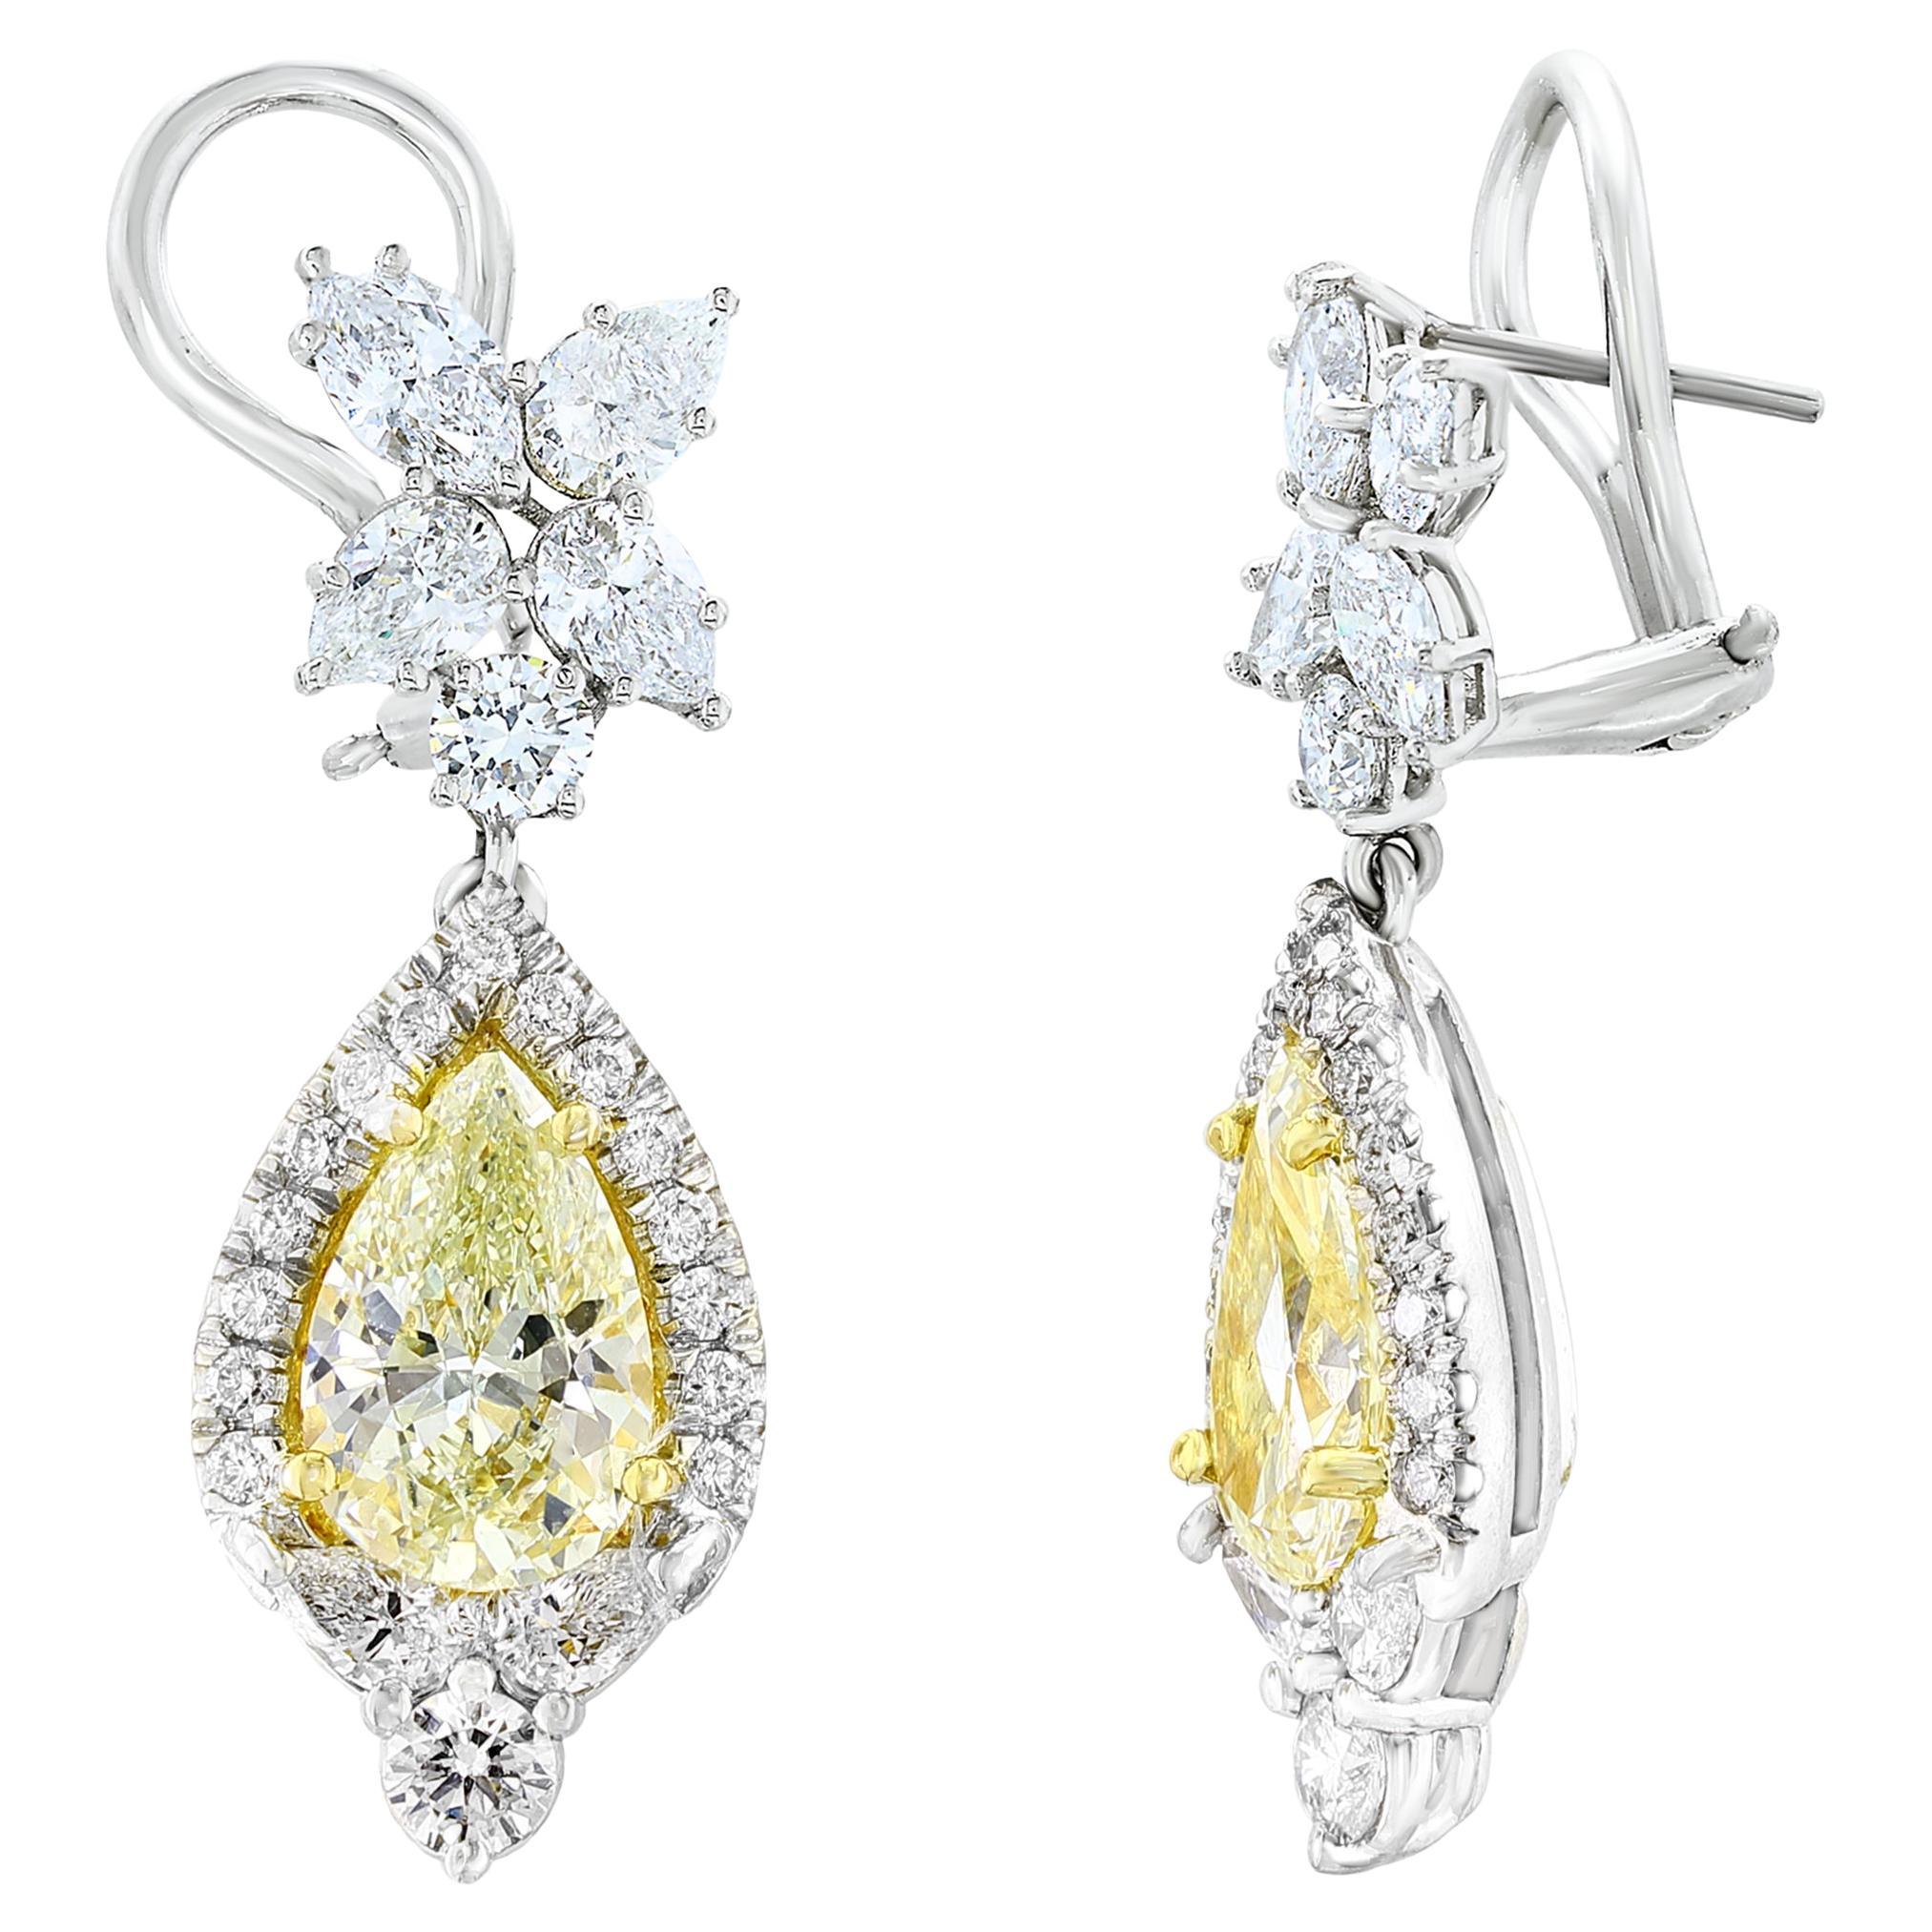 CERTIFIED 2.89 Carat Fancy Yellow Diamond Drop Earrings in 18K White Gold For Sale